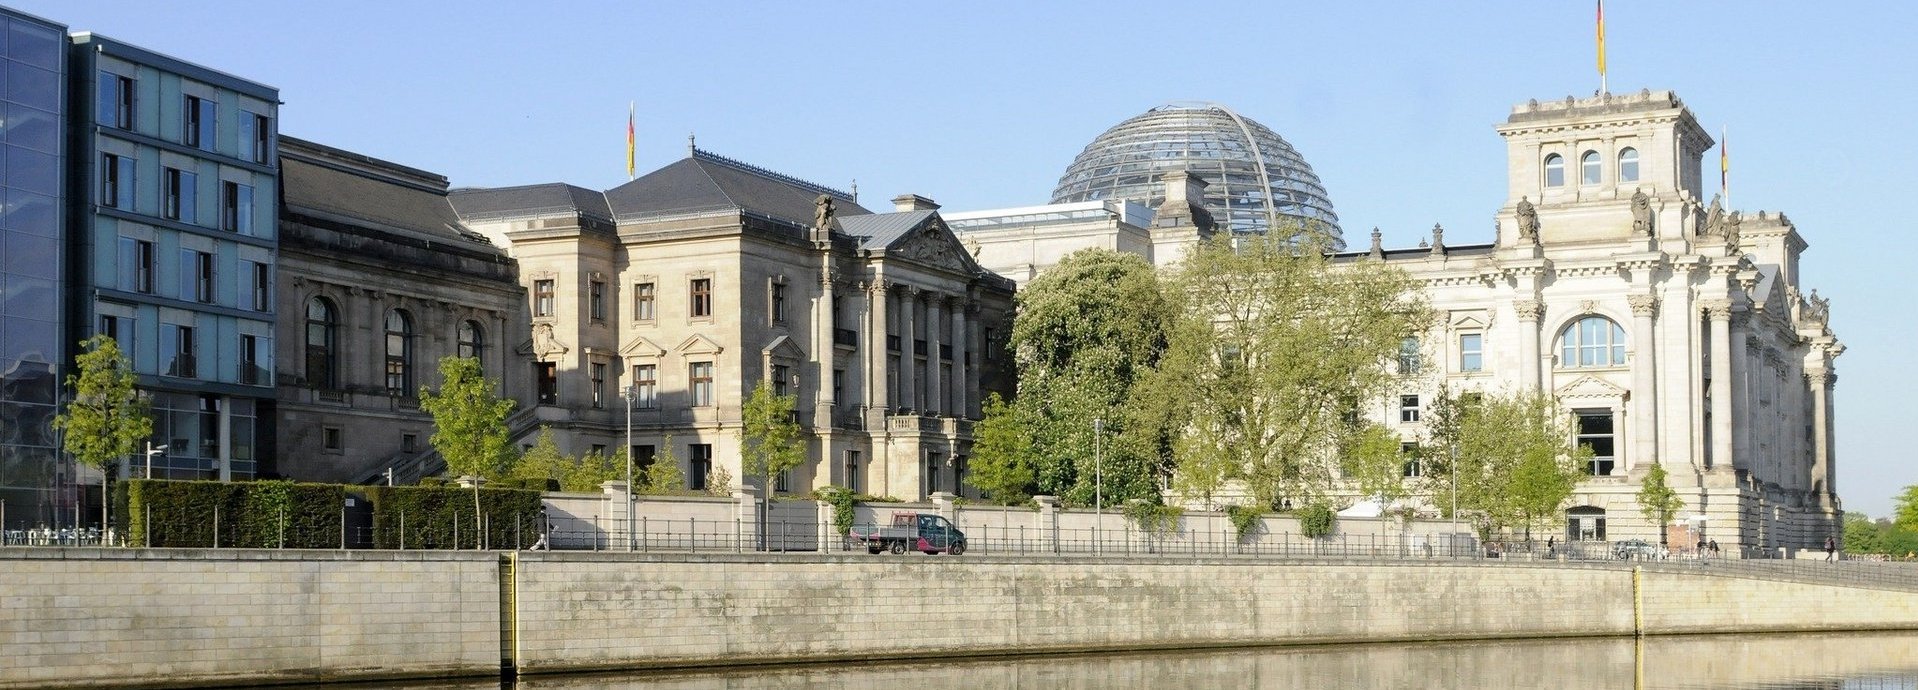 Außenansicht des Bundestags und benachbarter Gebäude vom anderen Spreeufer